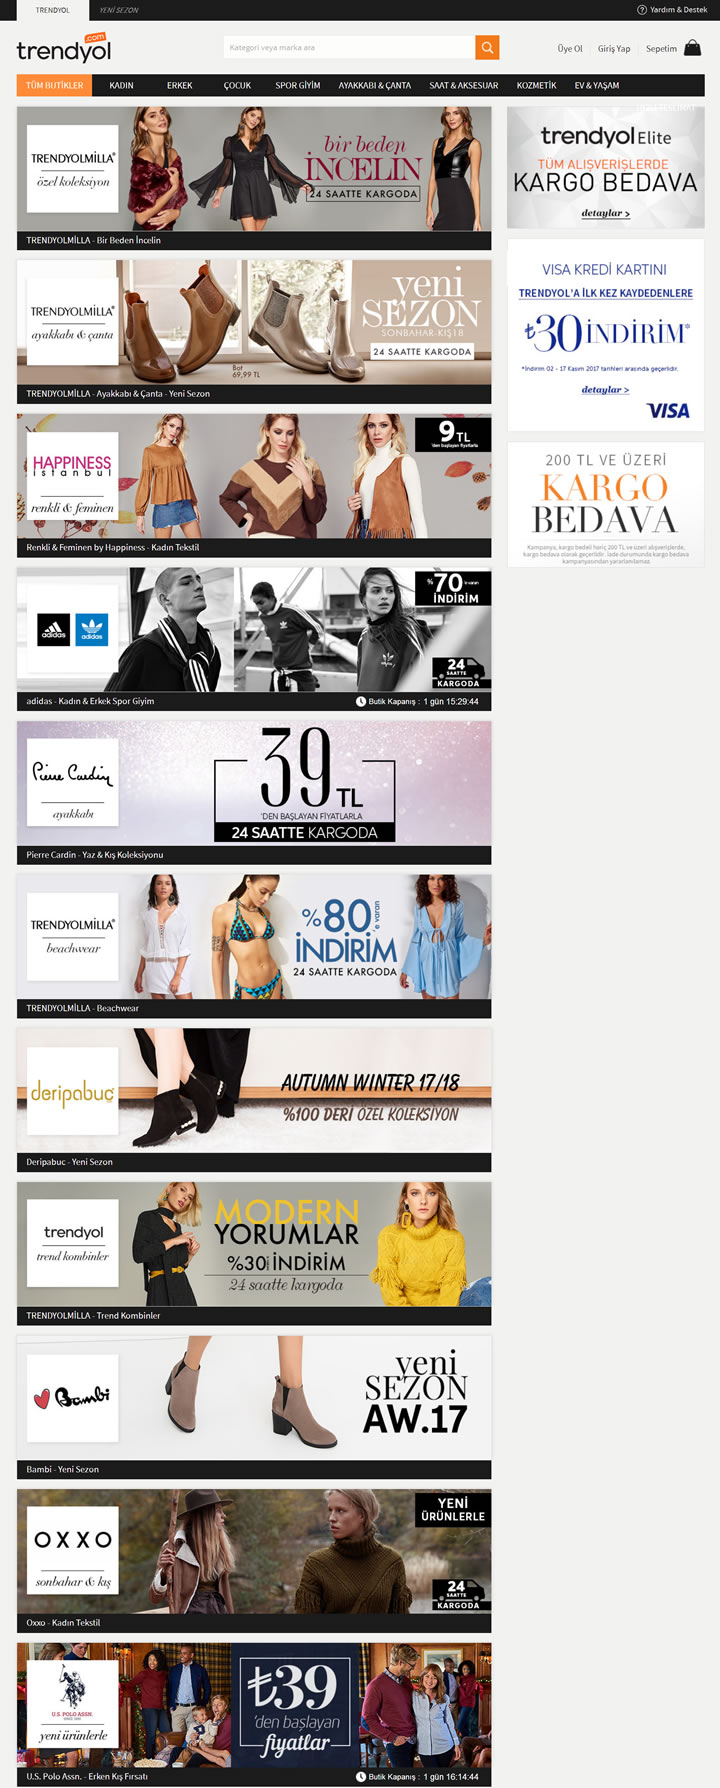 Trendyol土耳其时尚潮流在线购物网站